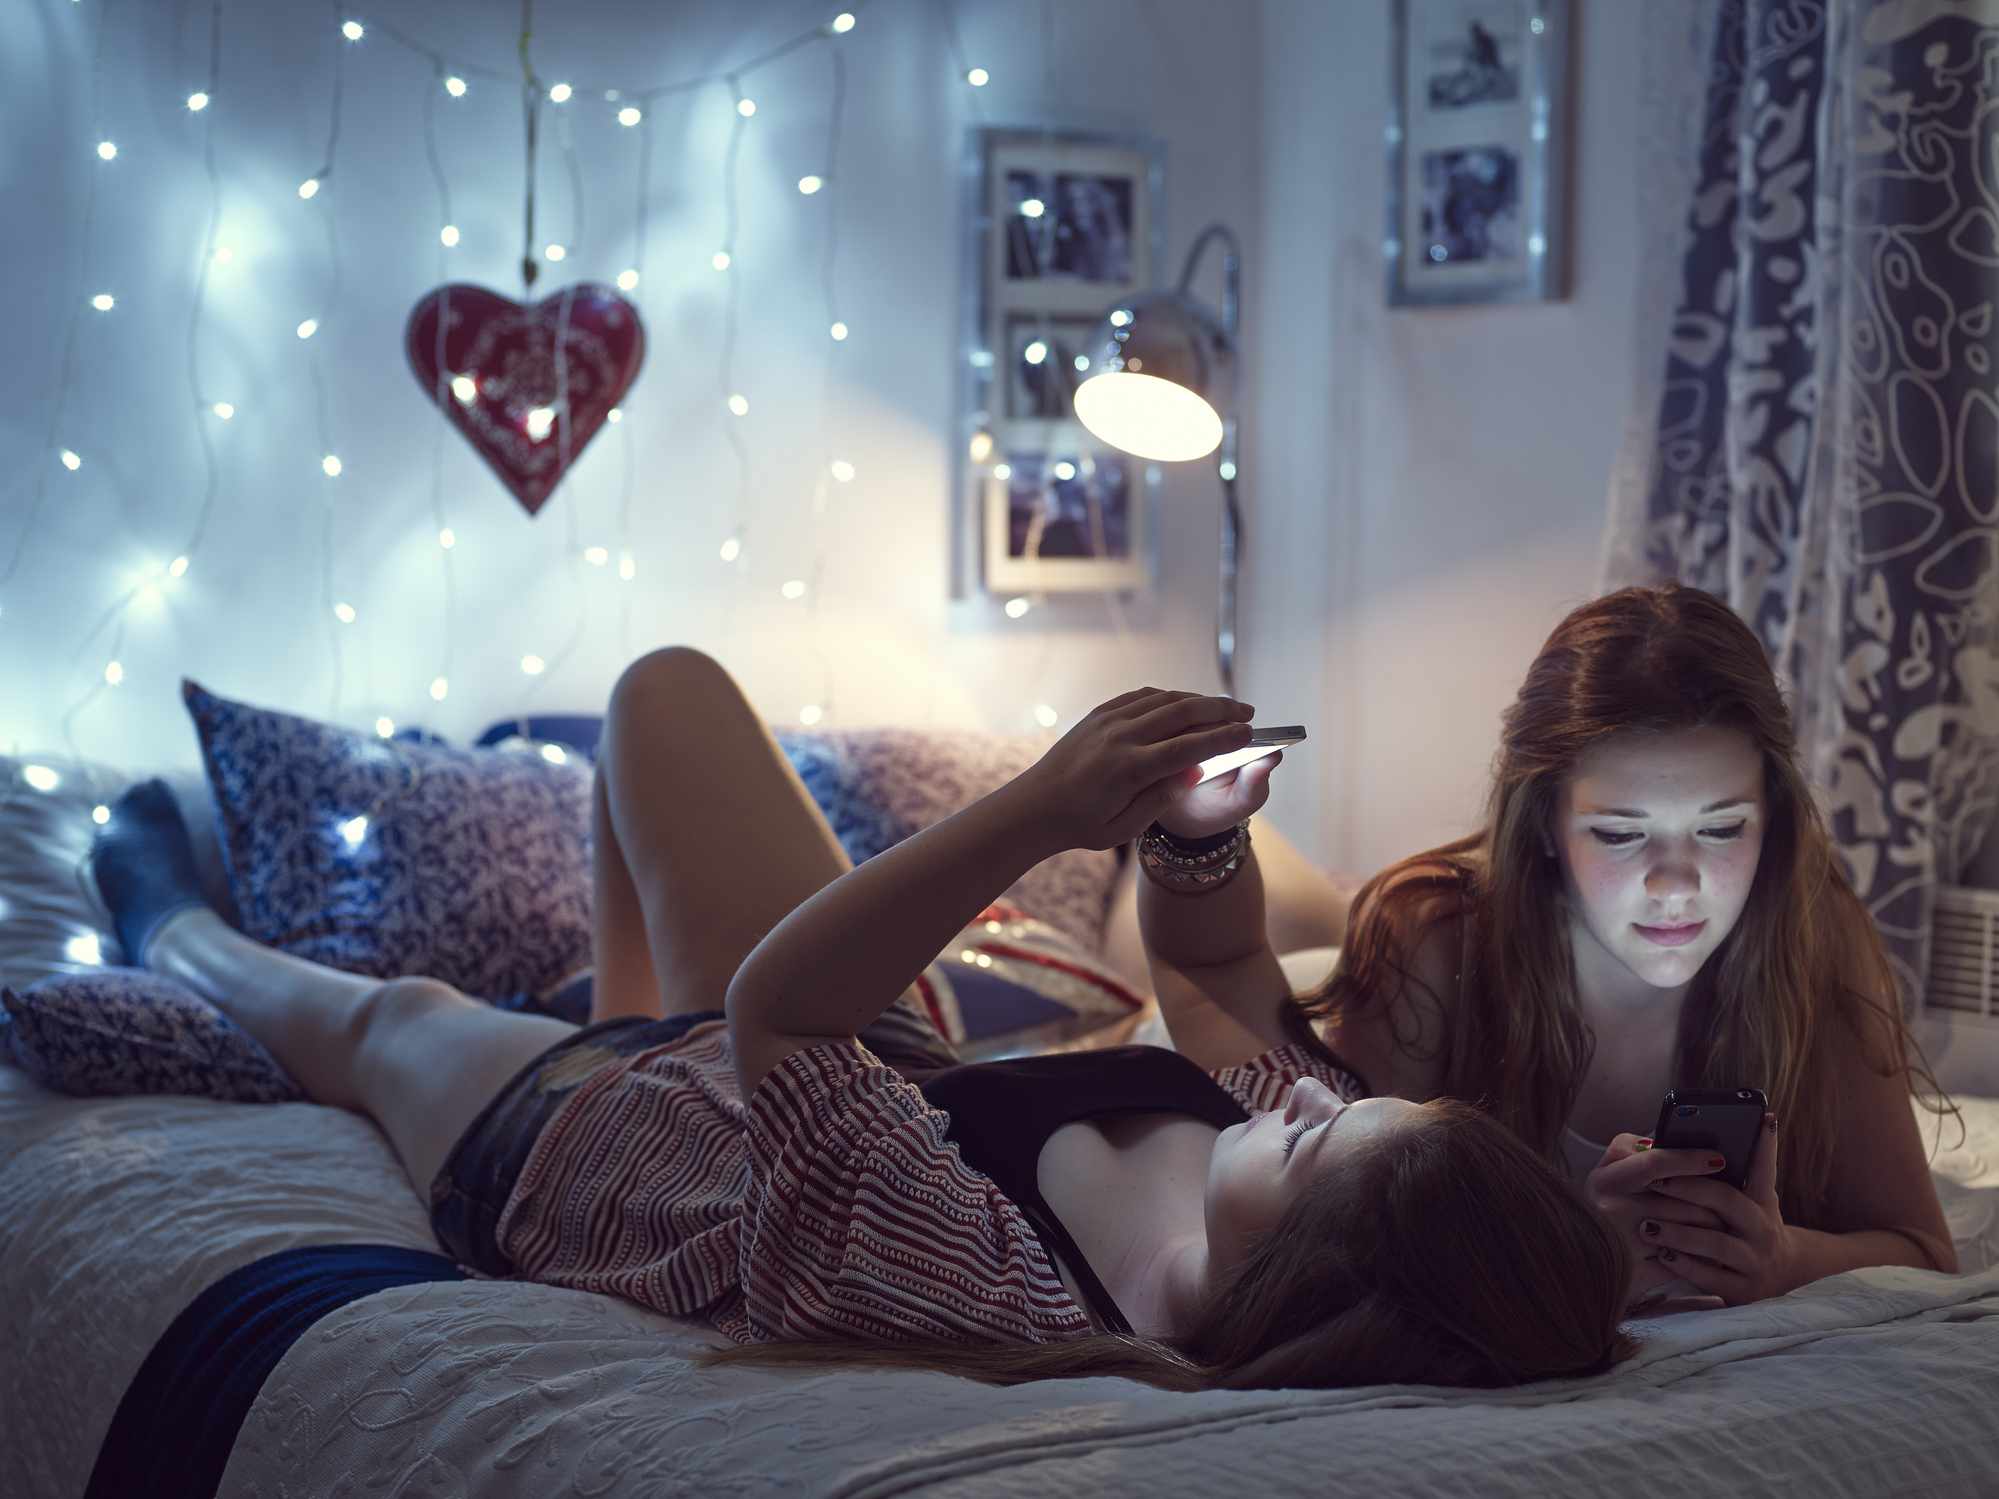 Twee jonge vrouwen die op een bed liggen.  Verlichting aan het voeteneinde van het bed.